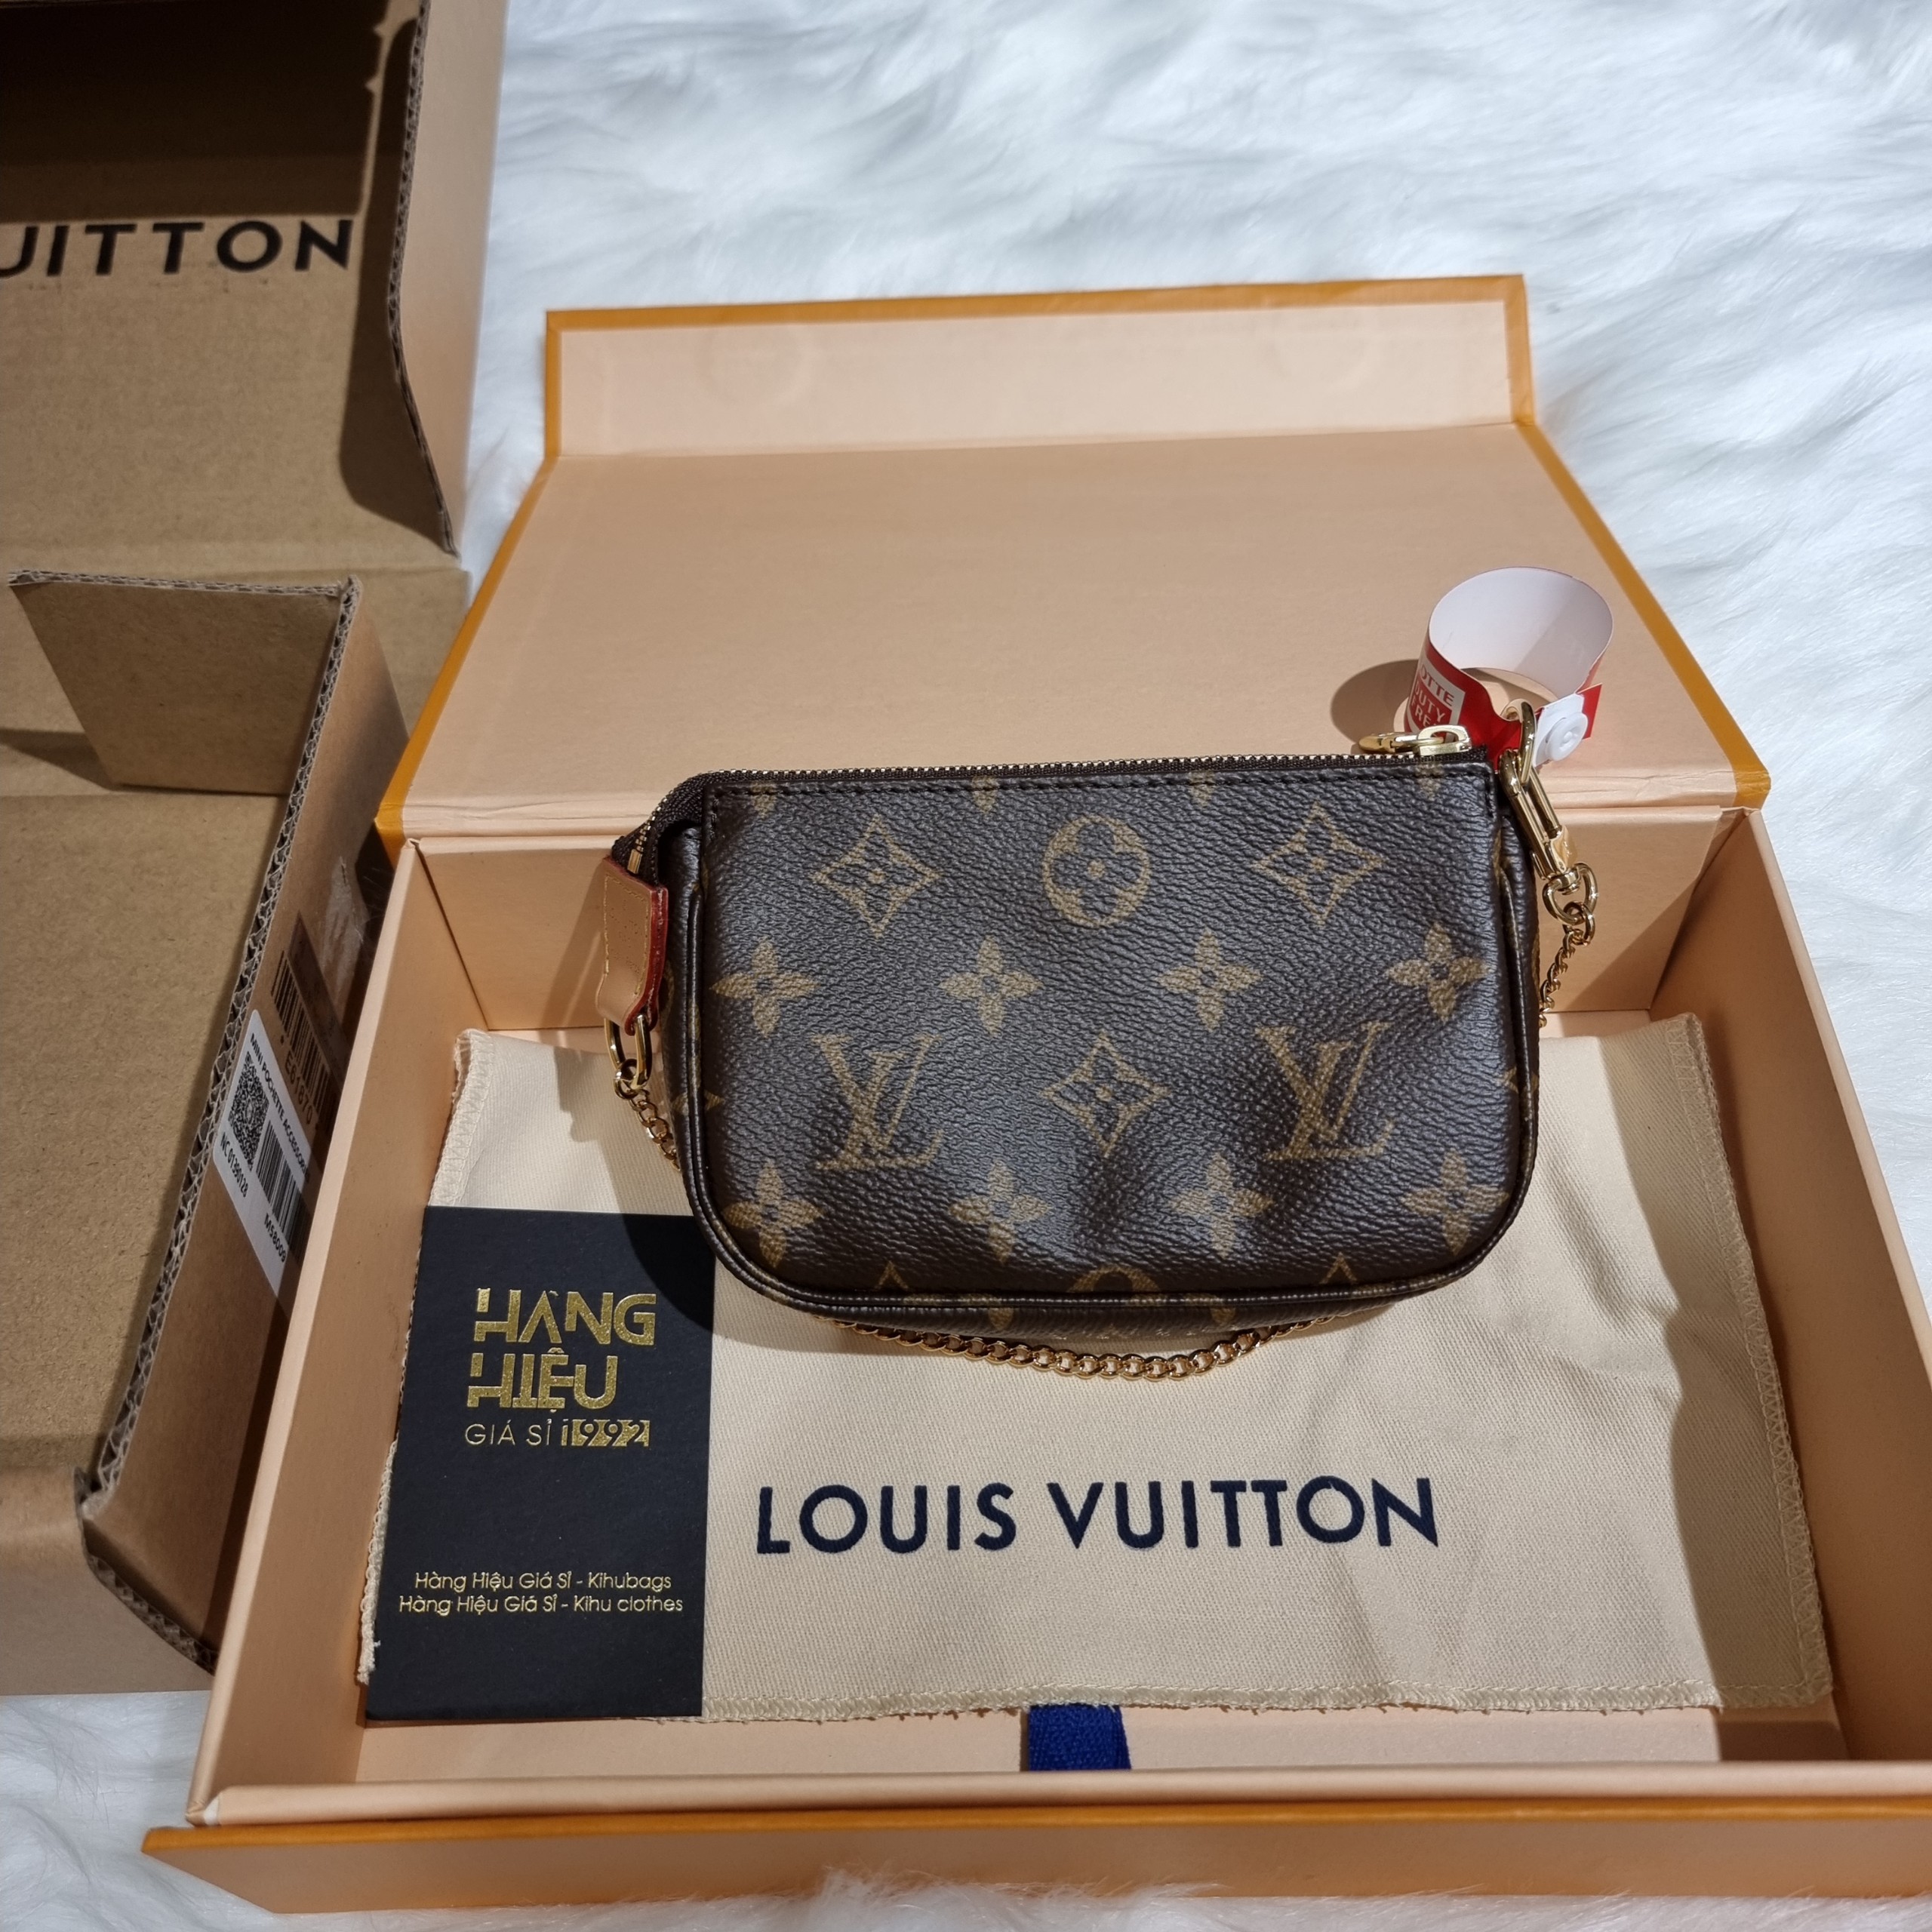 Mini Louis Vuitton  Etsy